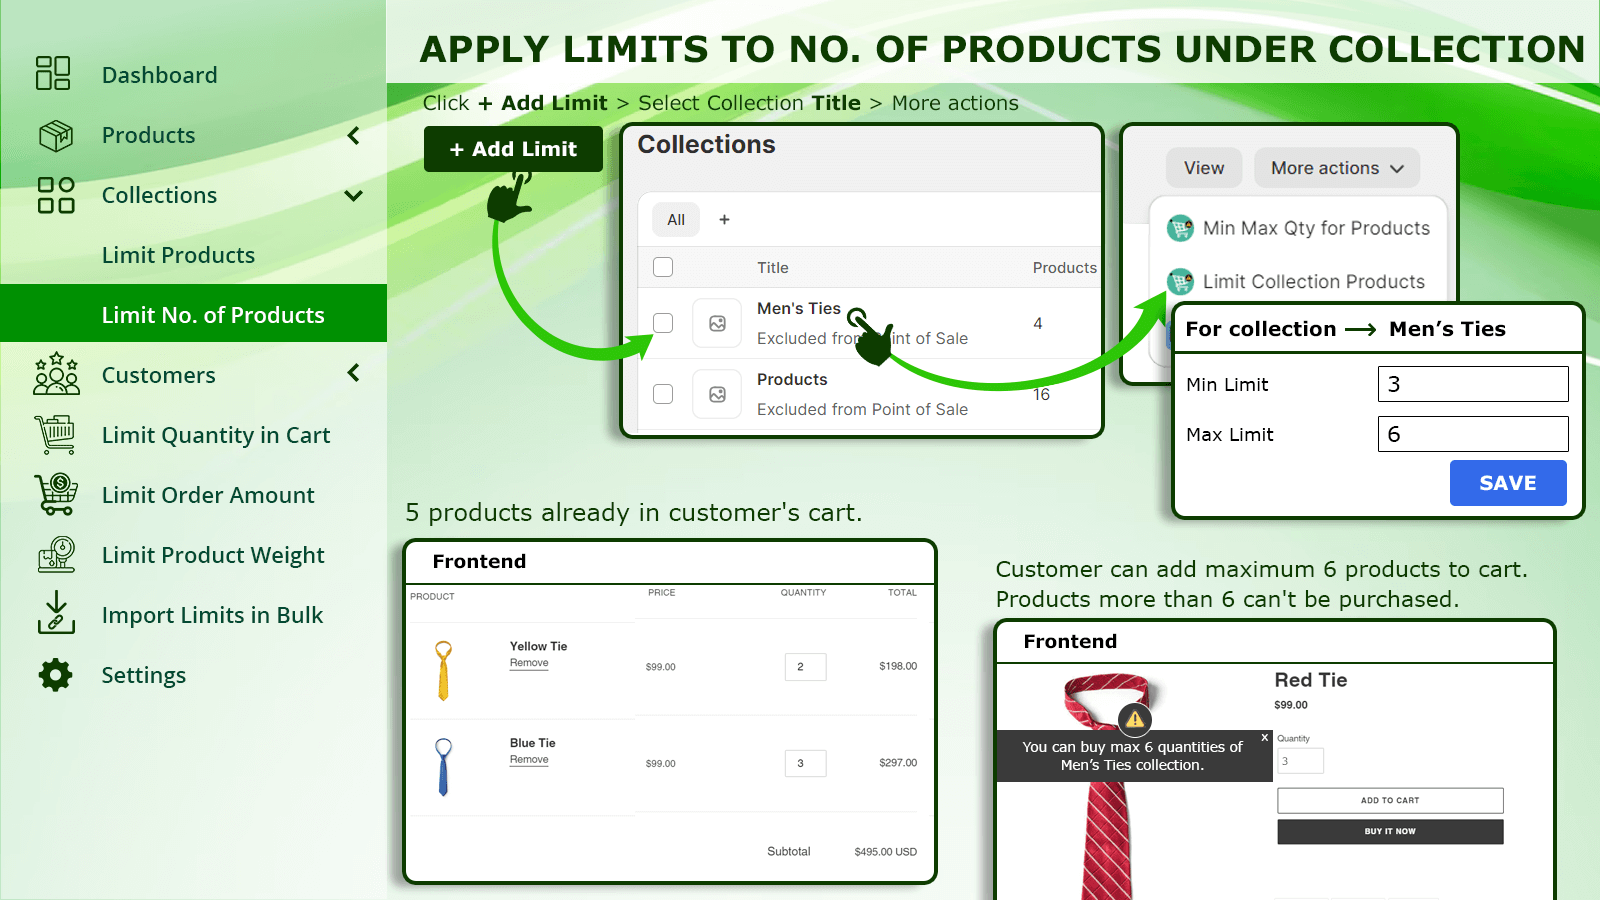 Appliquer des limites au nombre de produits sous collection